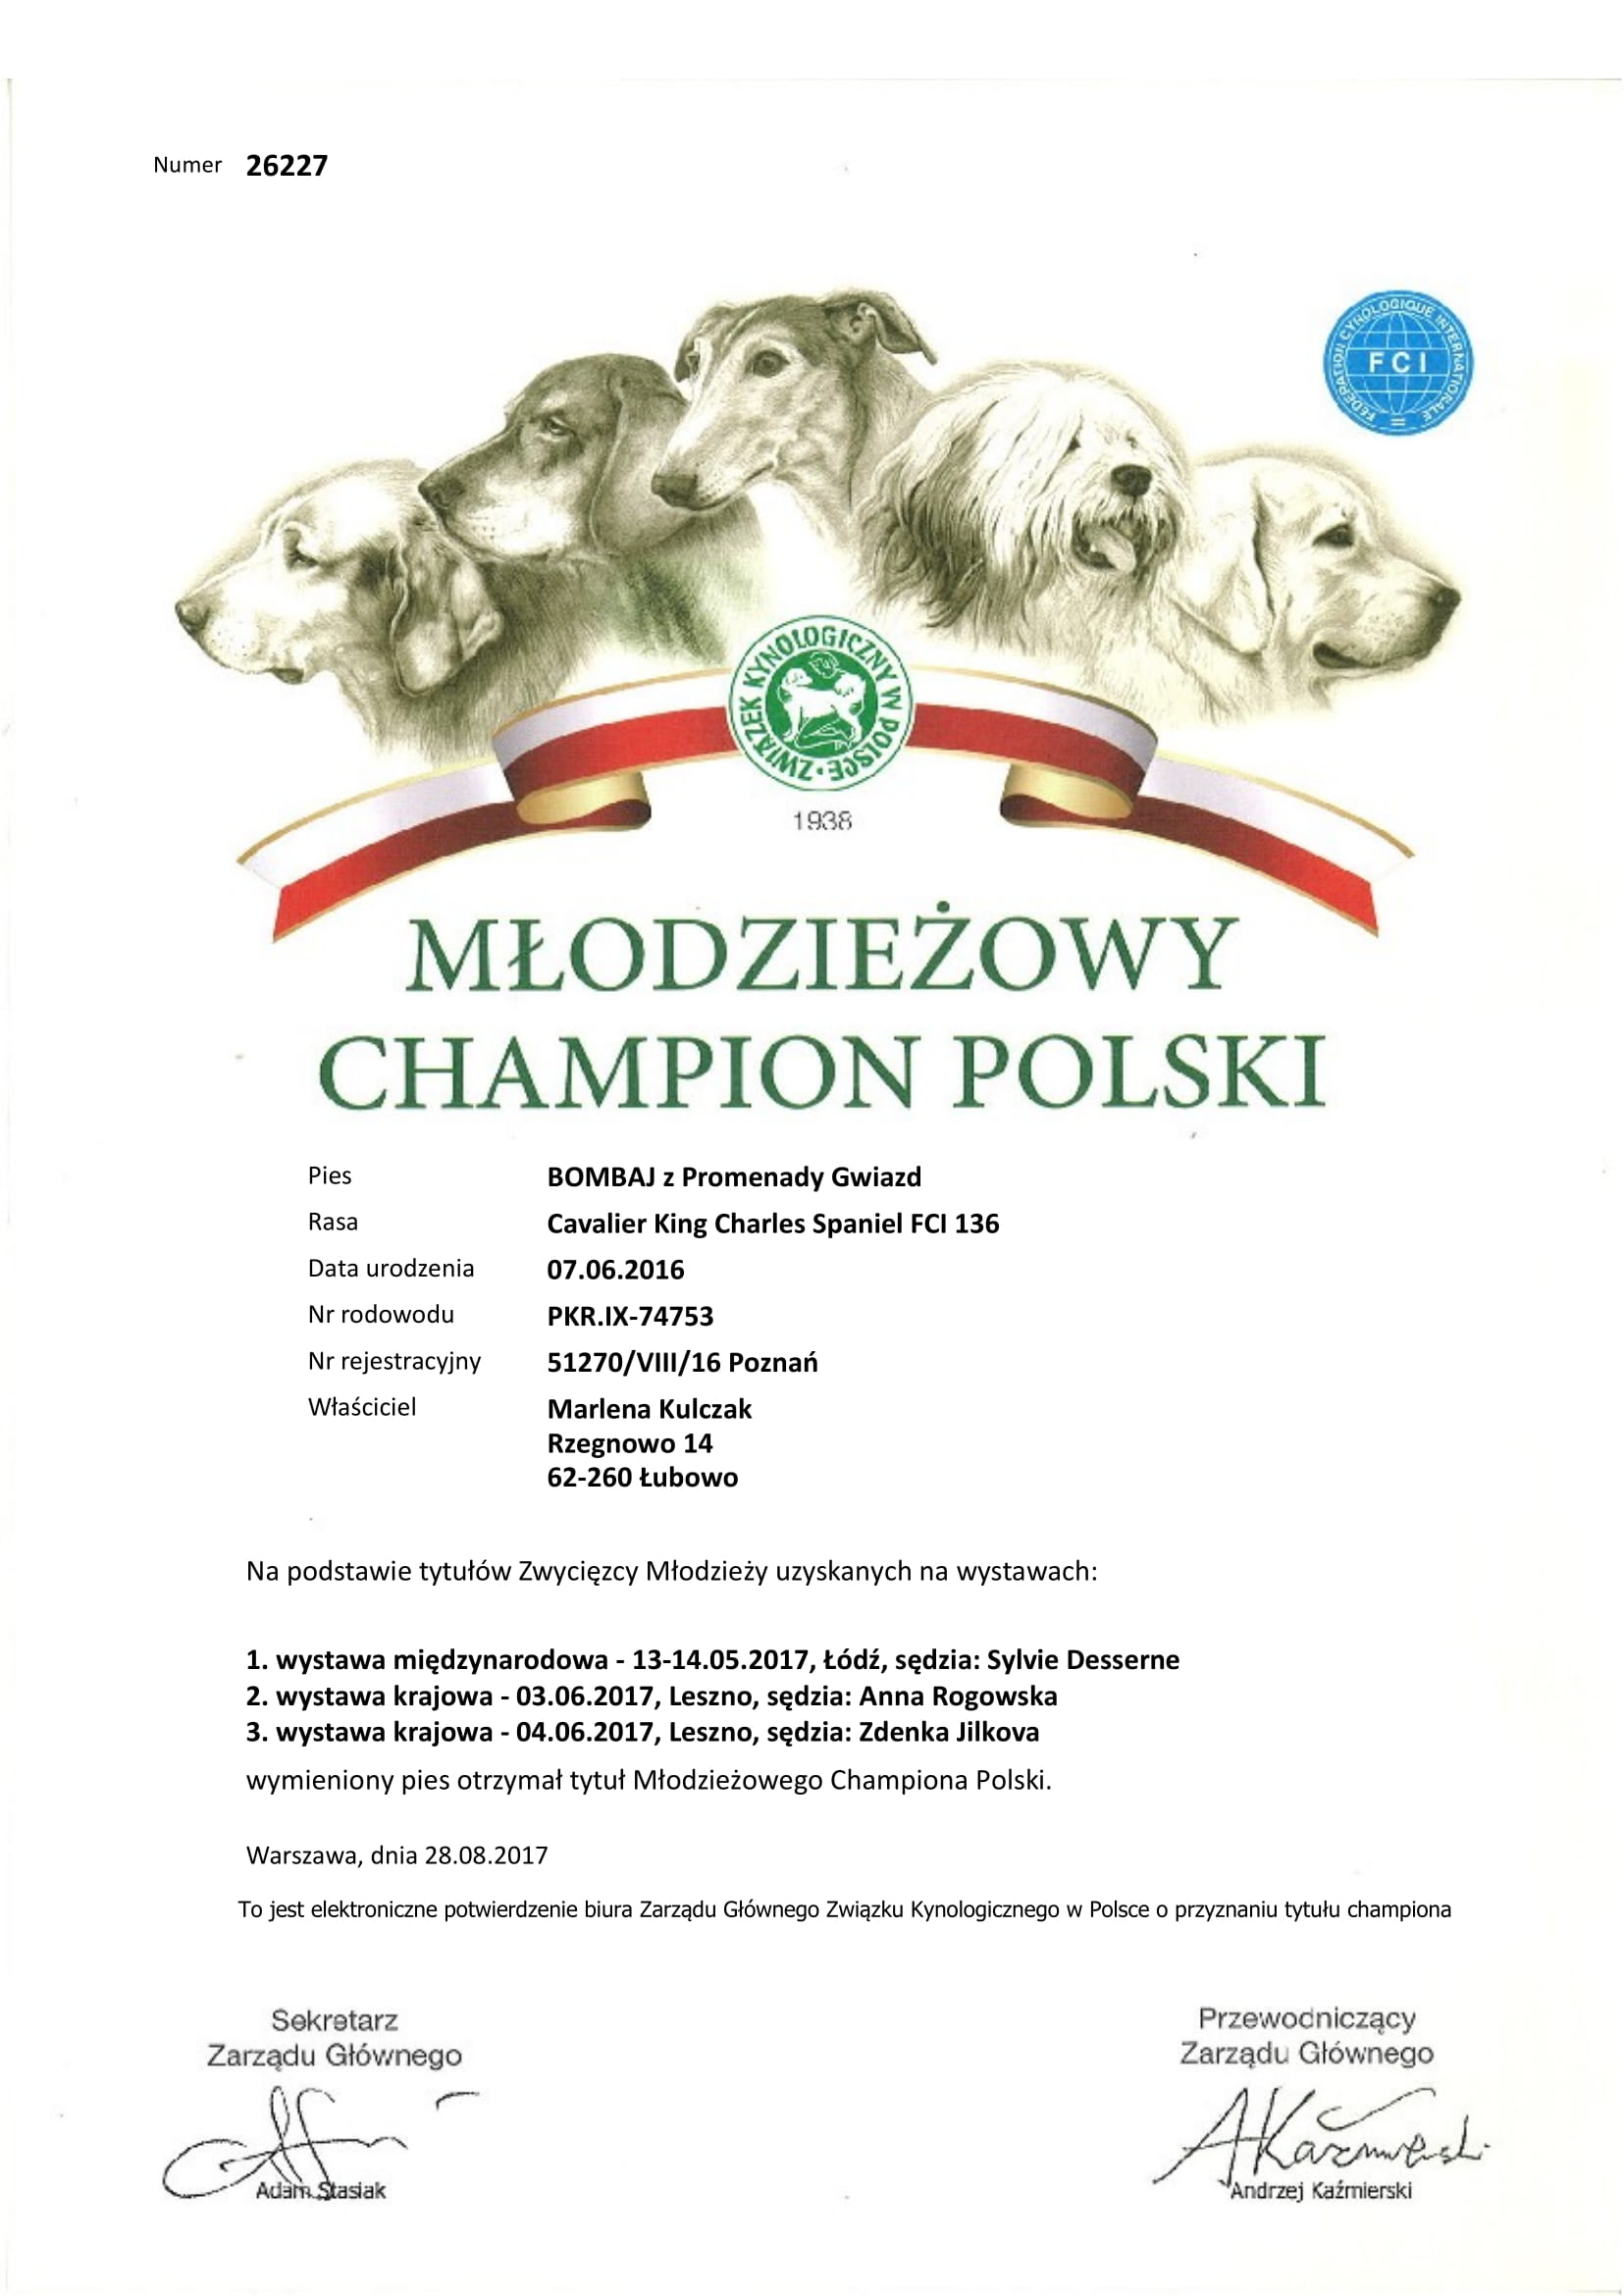 Mlodziezowy Champion Polski